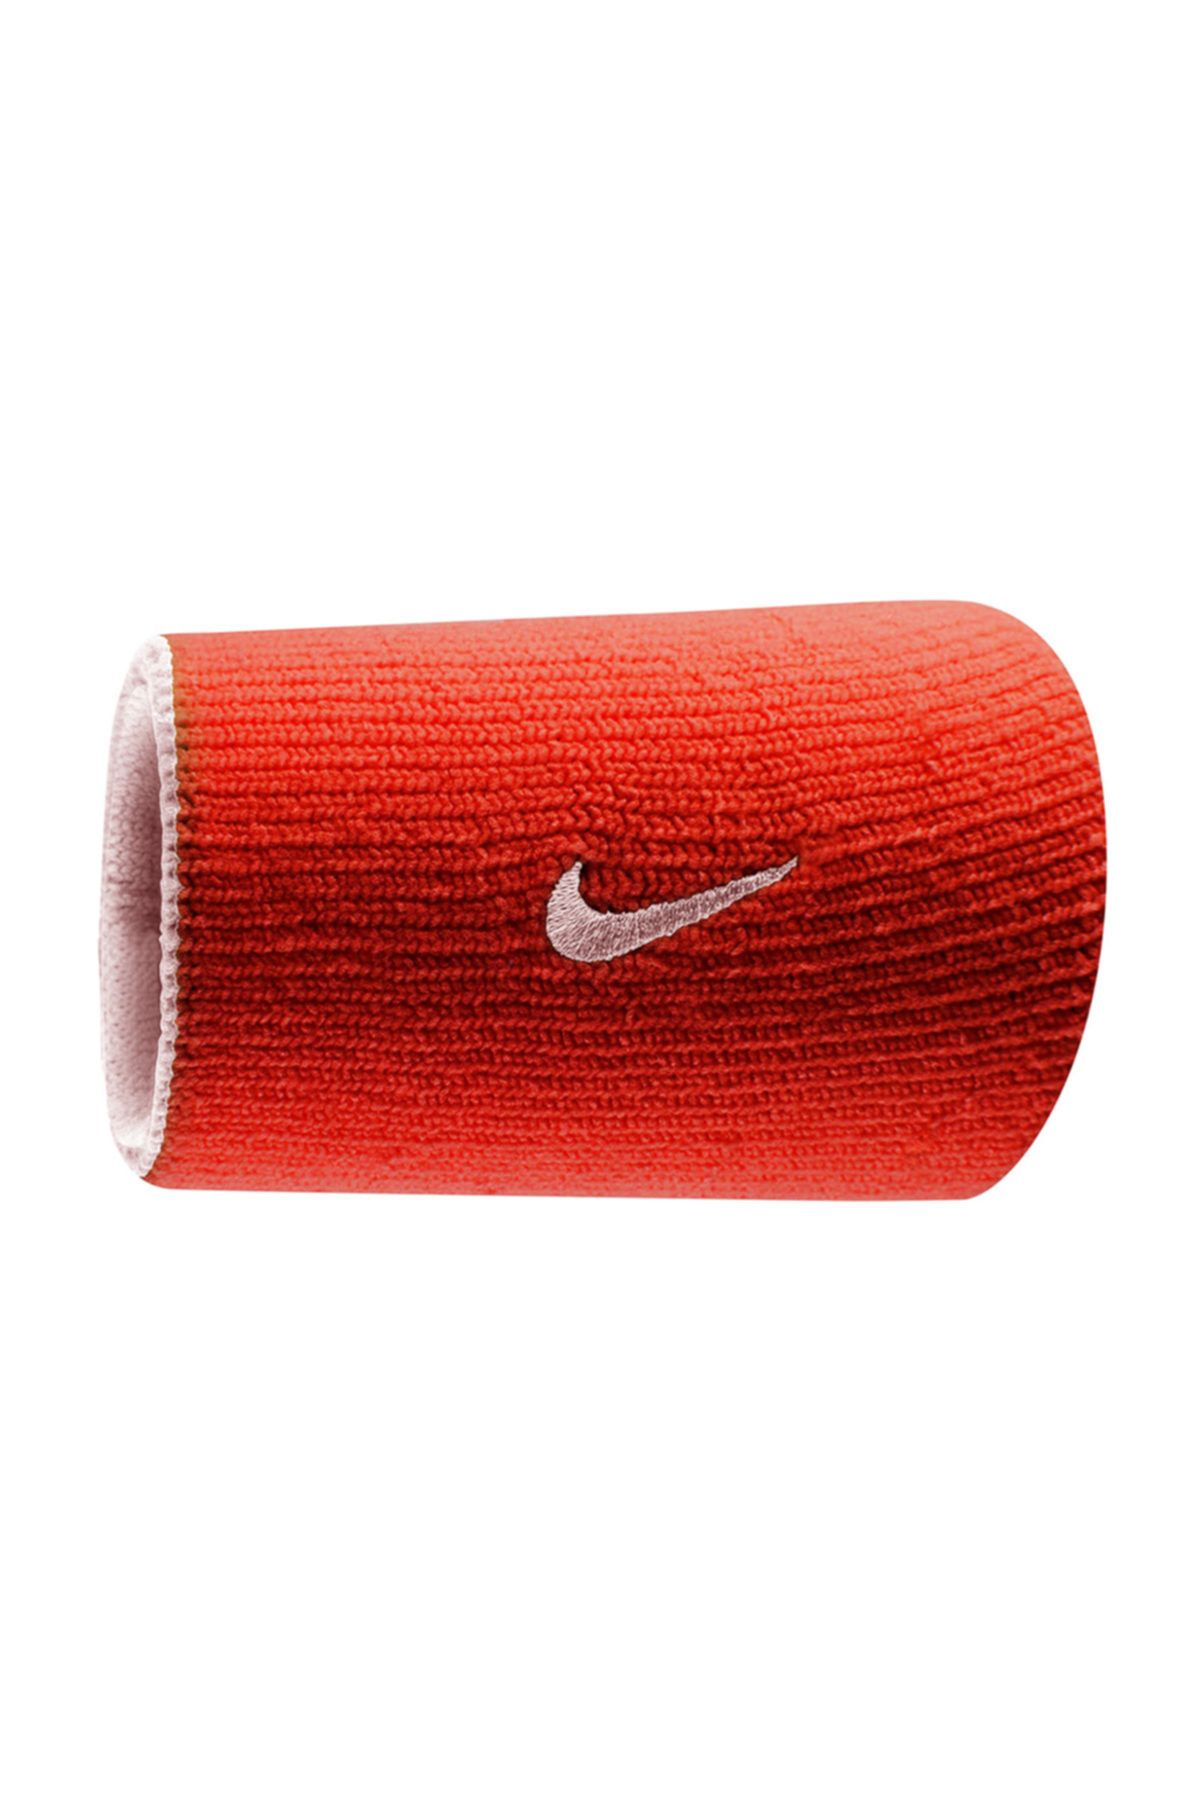 Nike Sporcu Aksesuarları - Dri-Fit Home Away Çift Taraflı Bileklik - N.NN.B0.624.OS